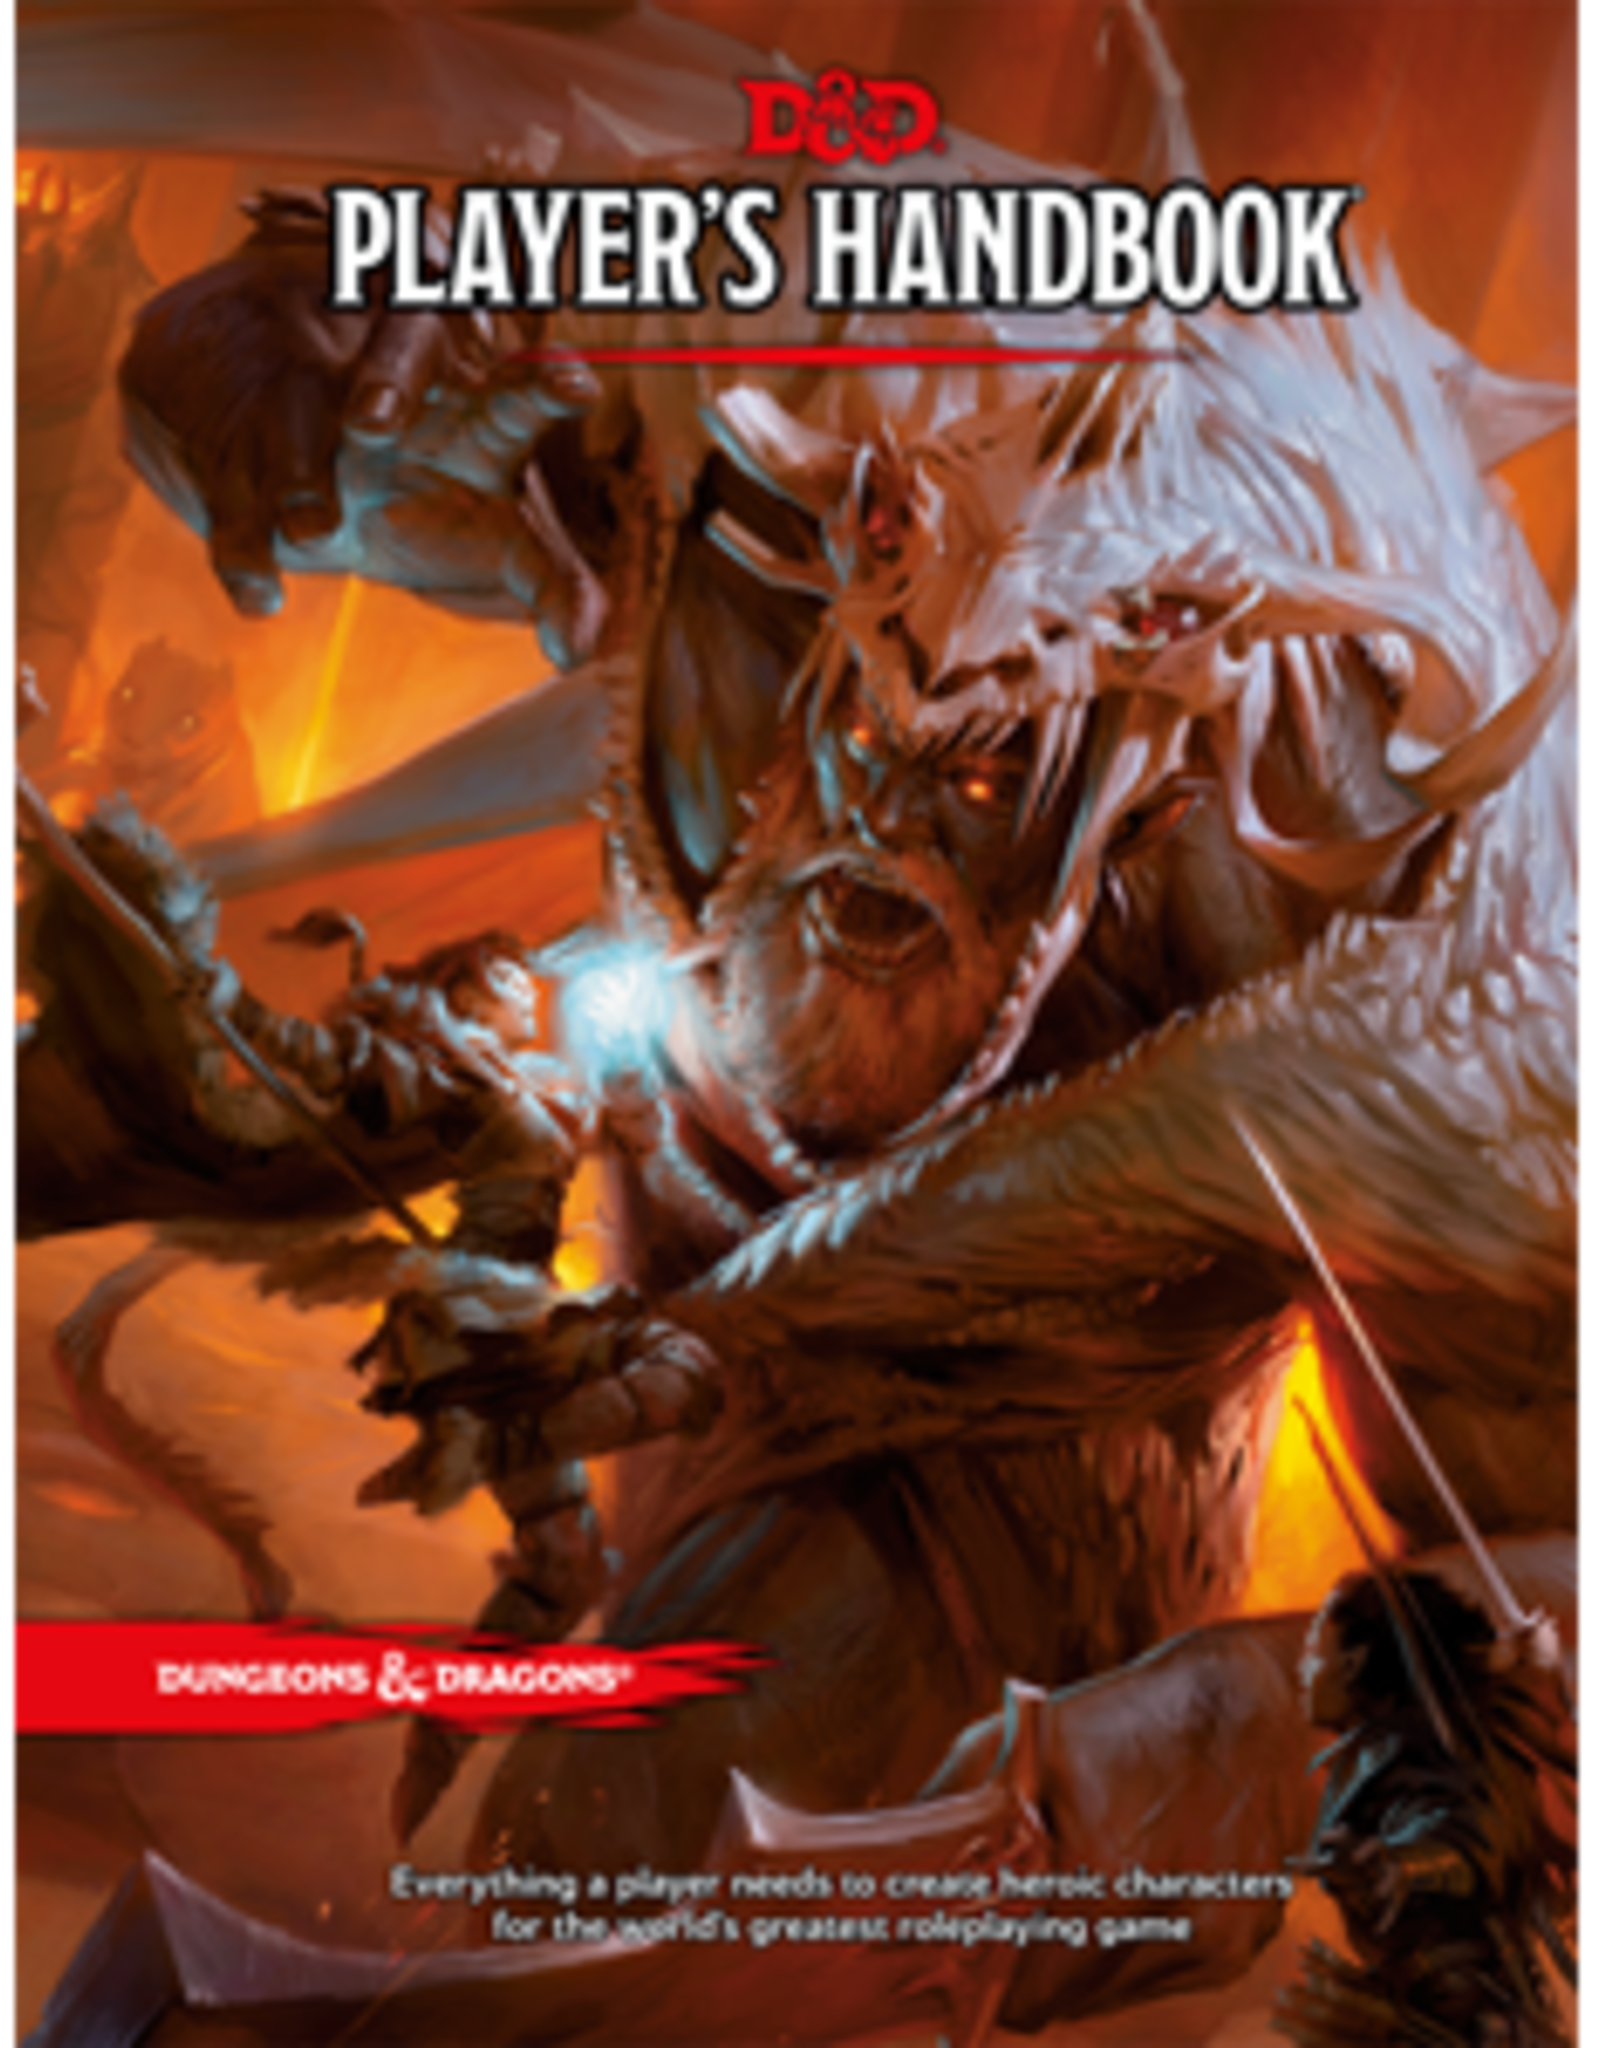 Dungeons & Dragons D&D 5e: Player's Handbook